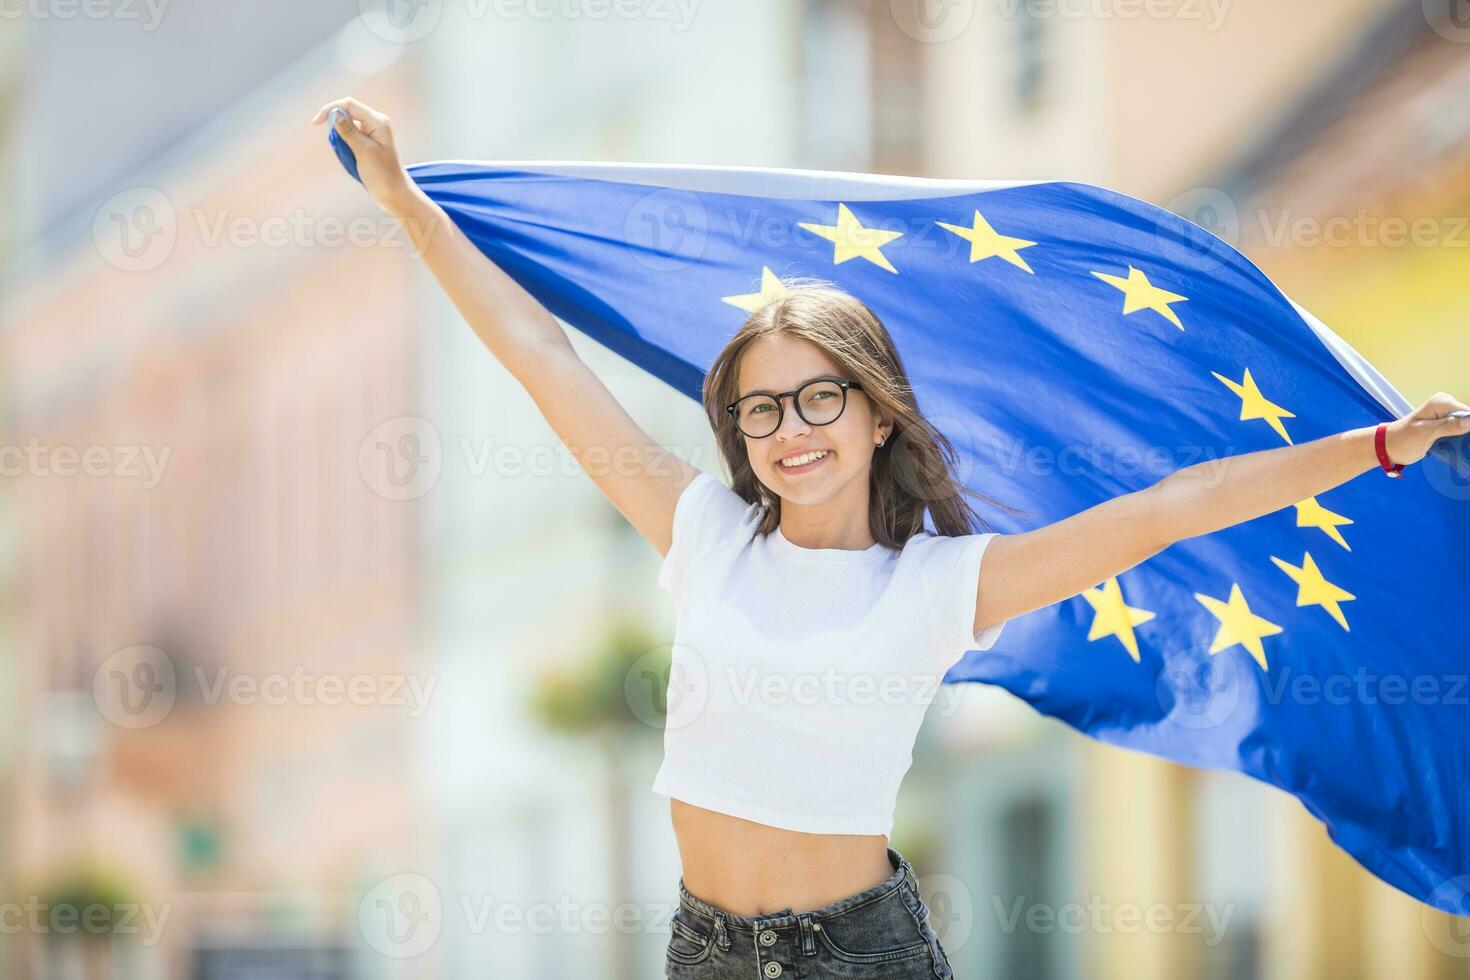 schattig gelukkig jong meisje met de vlag van de Europese unie in de straten ergens in Europa foto